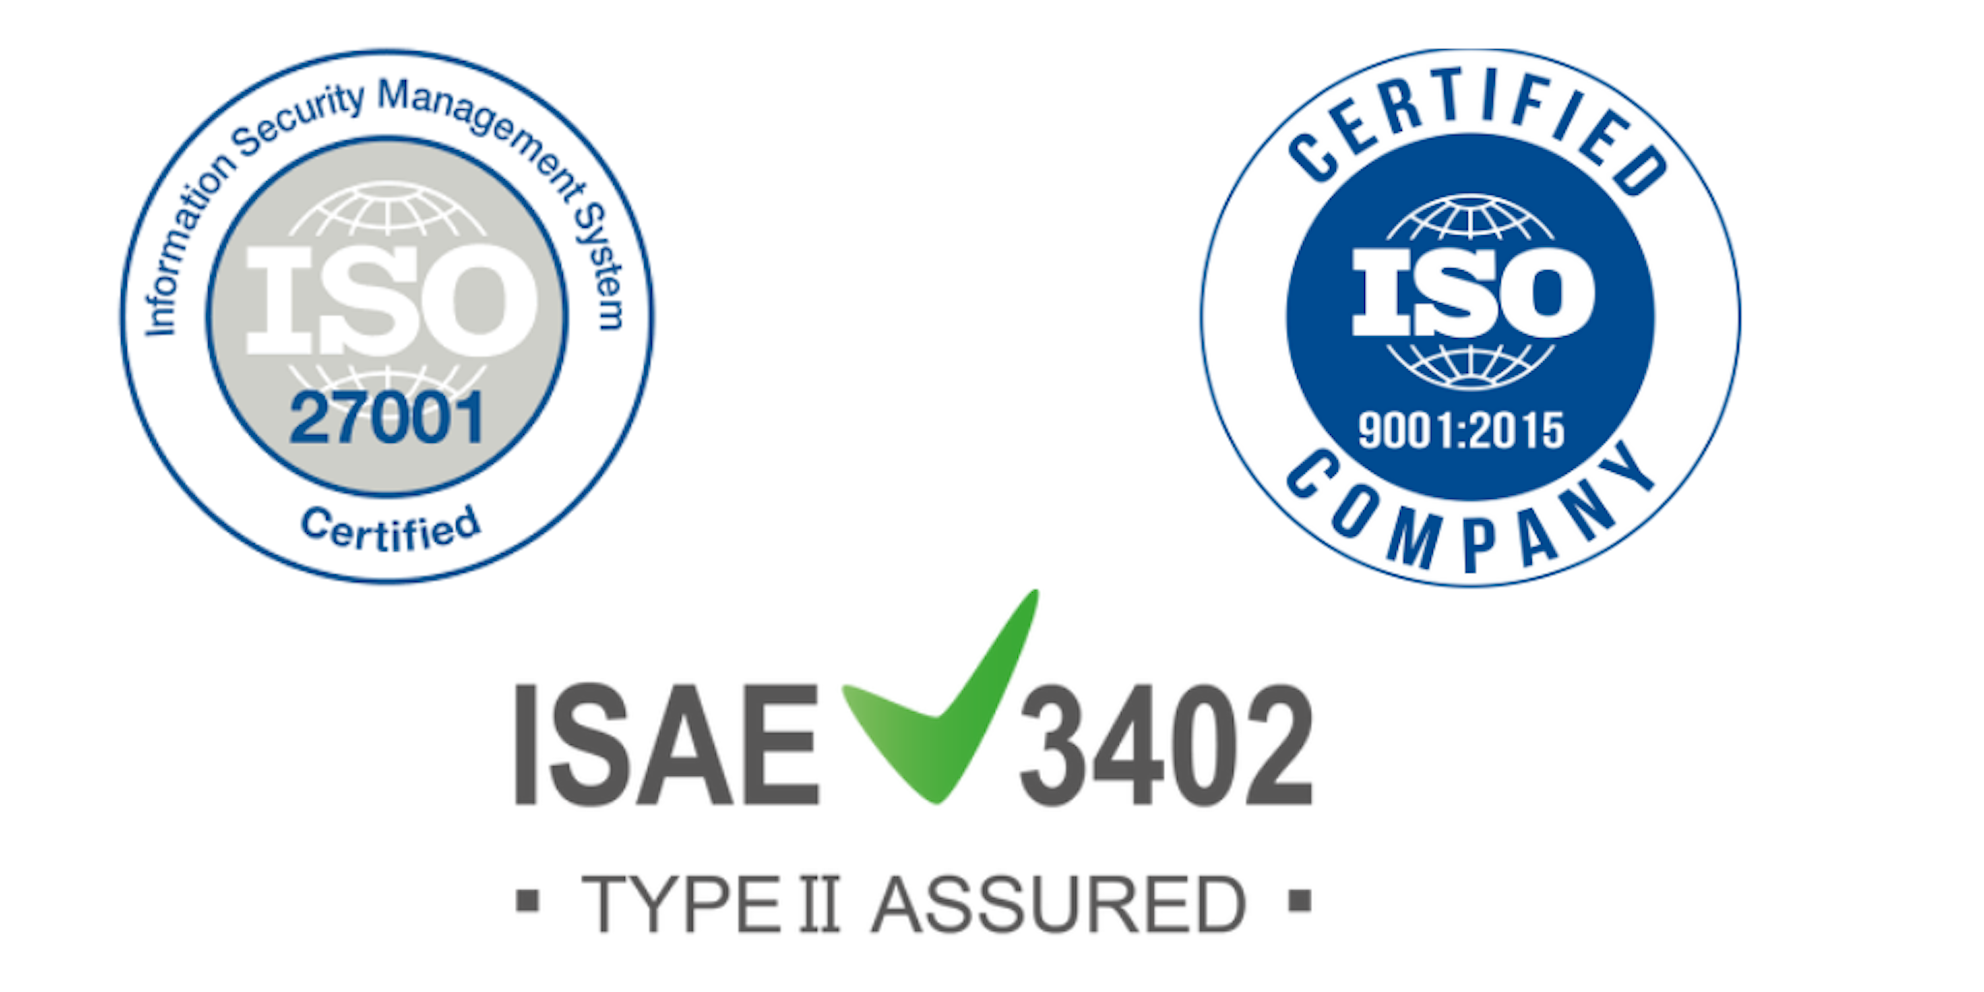 CLC behaalt ISAE 3402 type II verklaring & continueert ISO 9001 en ISO 27001